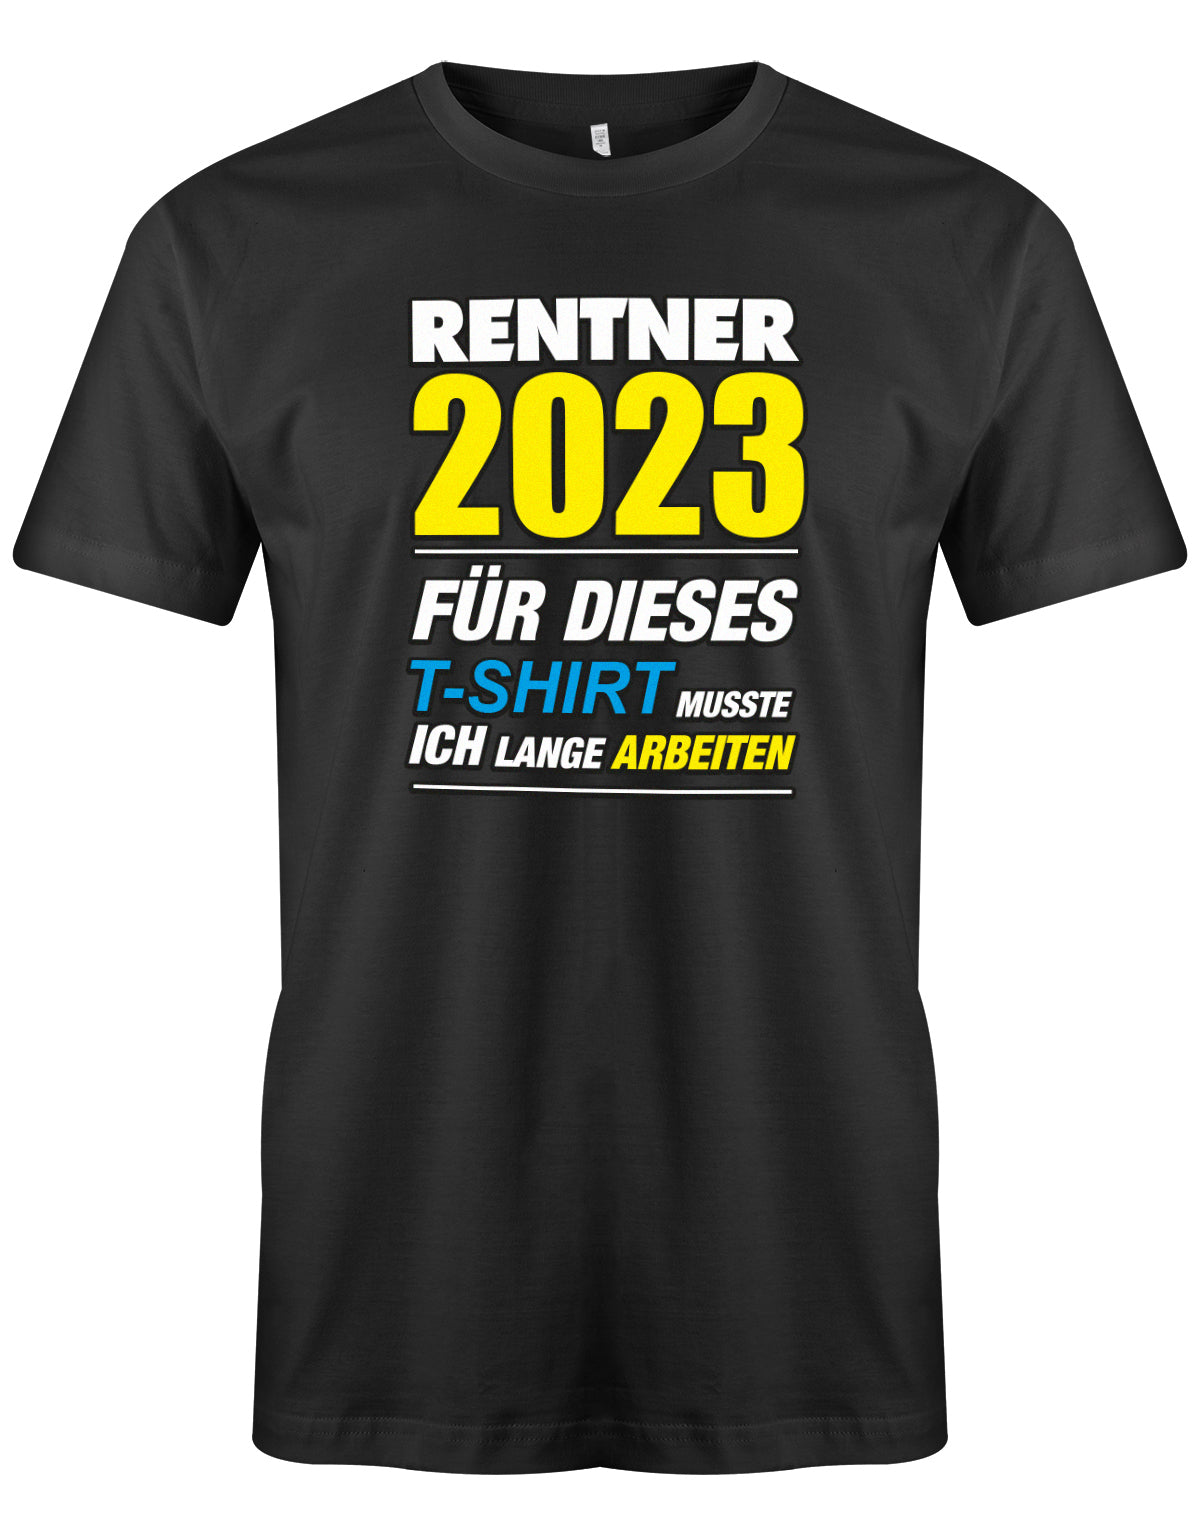 Rentner 2023 für dieses T-Shirt musste ich lange arbeiten - Männer T-Shirt Schwarz